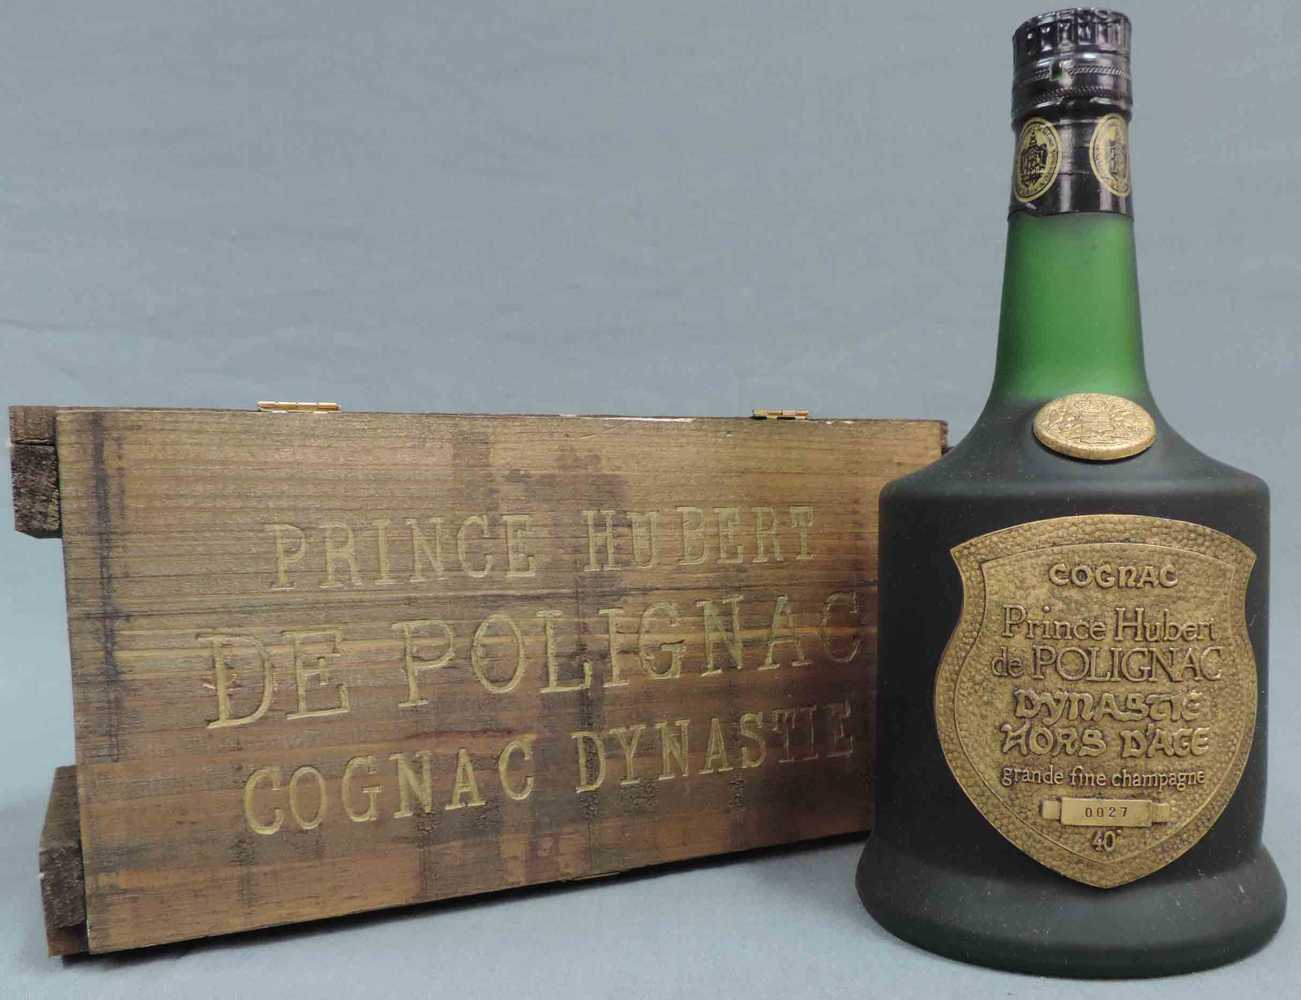 Prince Hubert de Polignac Dynastie Hors D'Age Grande Fine Champagne. 40 %. Eine ganze Flasche in